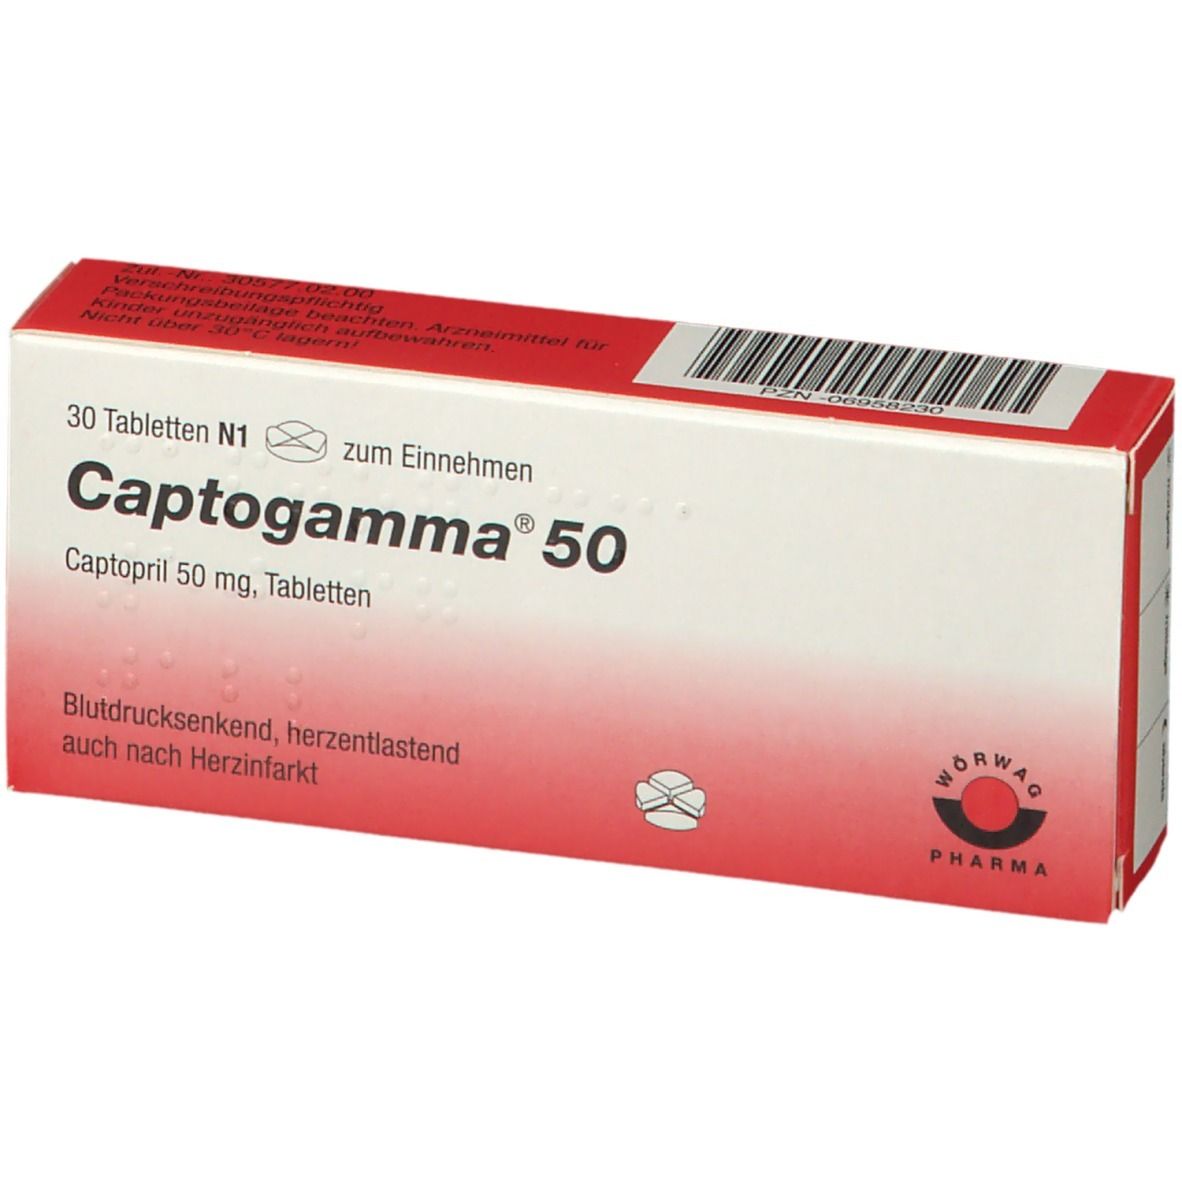 Captogamma® 50